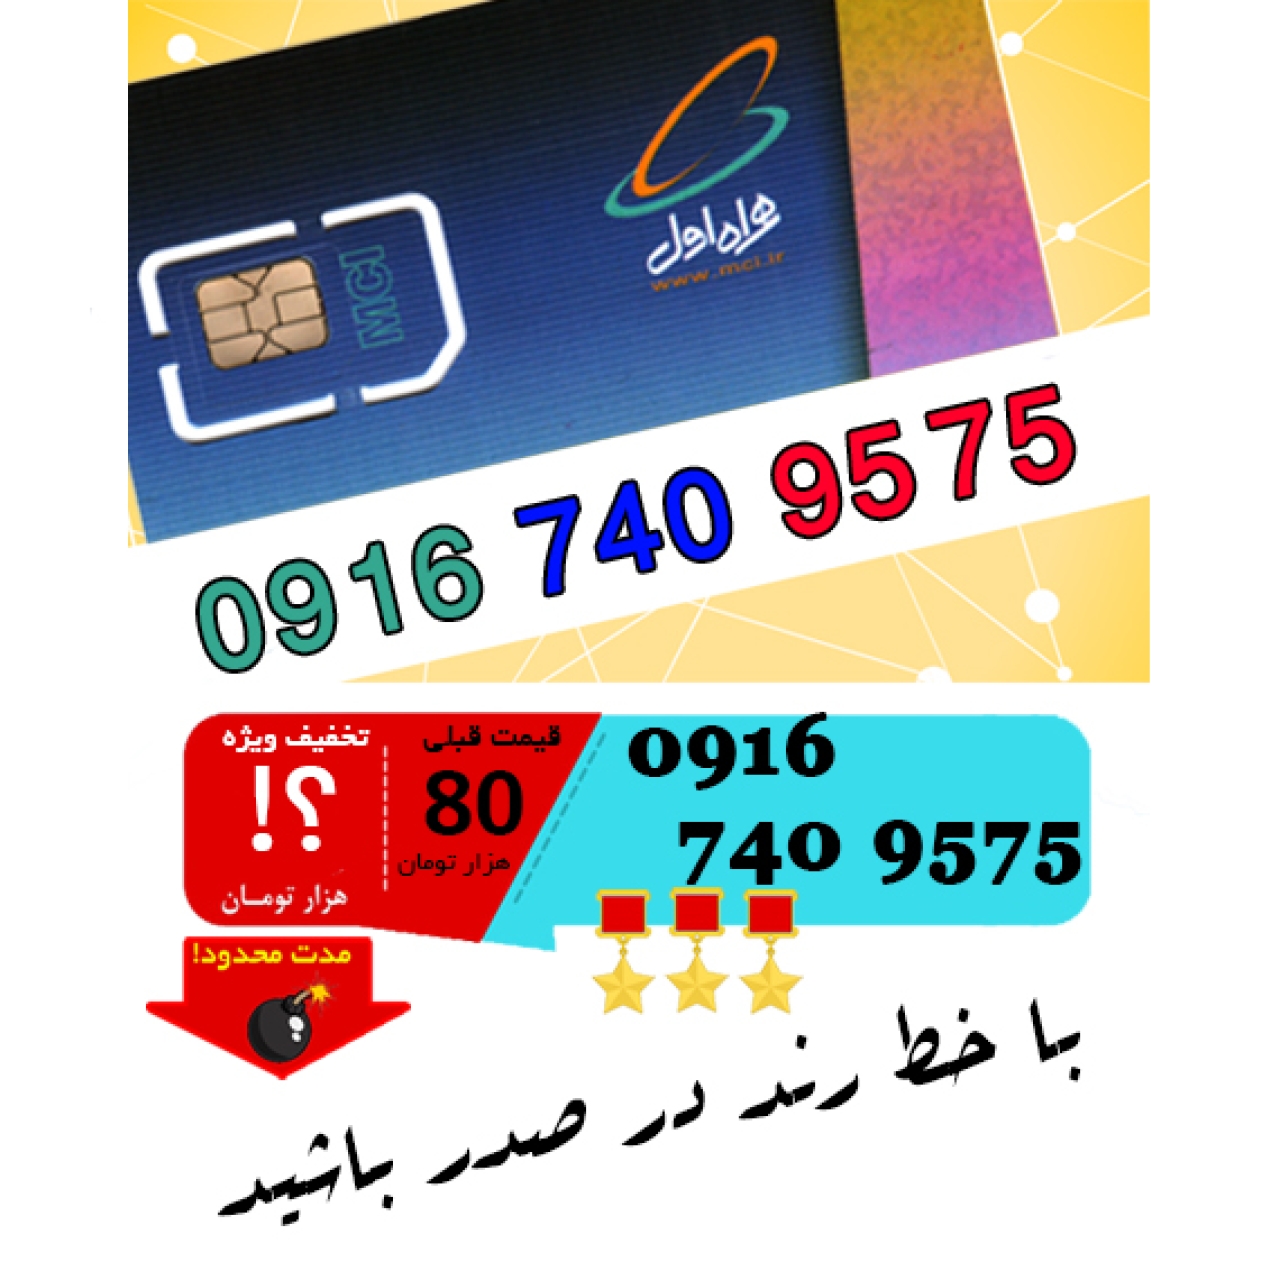 سیم کارت اعتباری رند همراه اول 09167409575